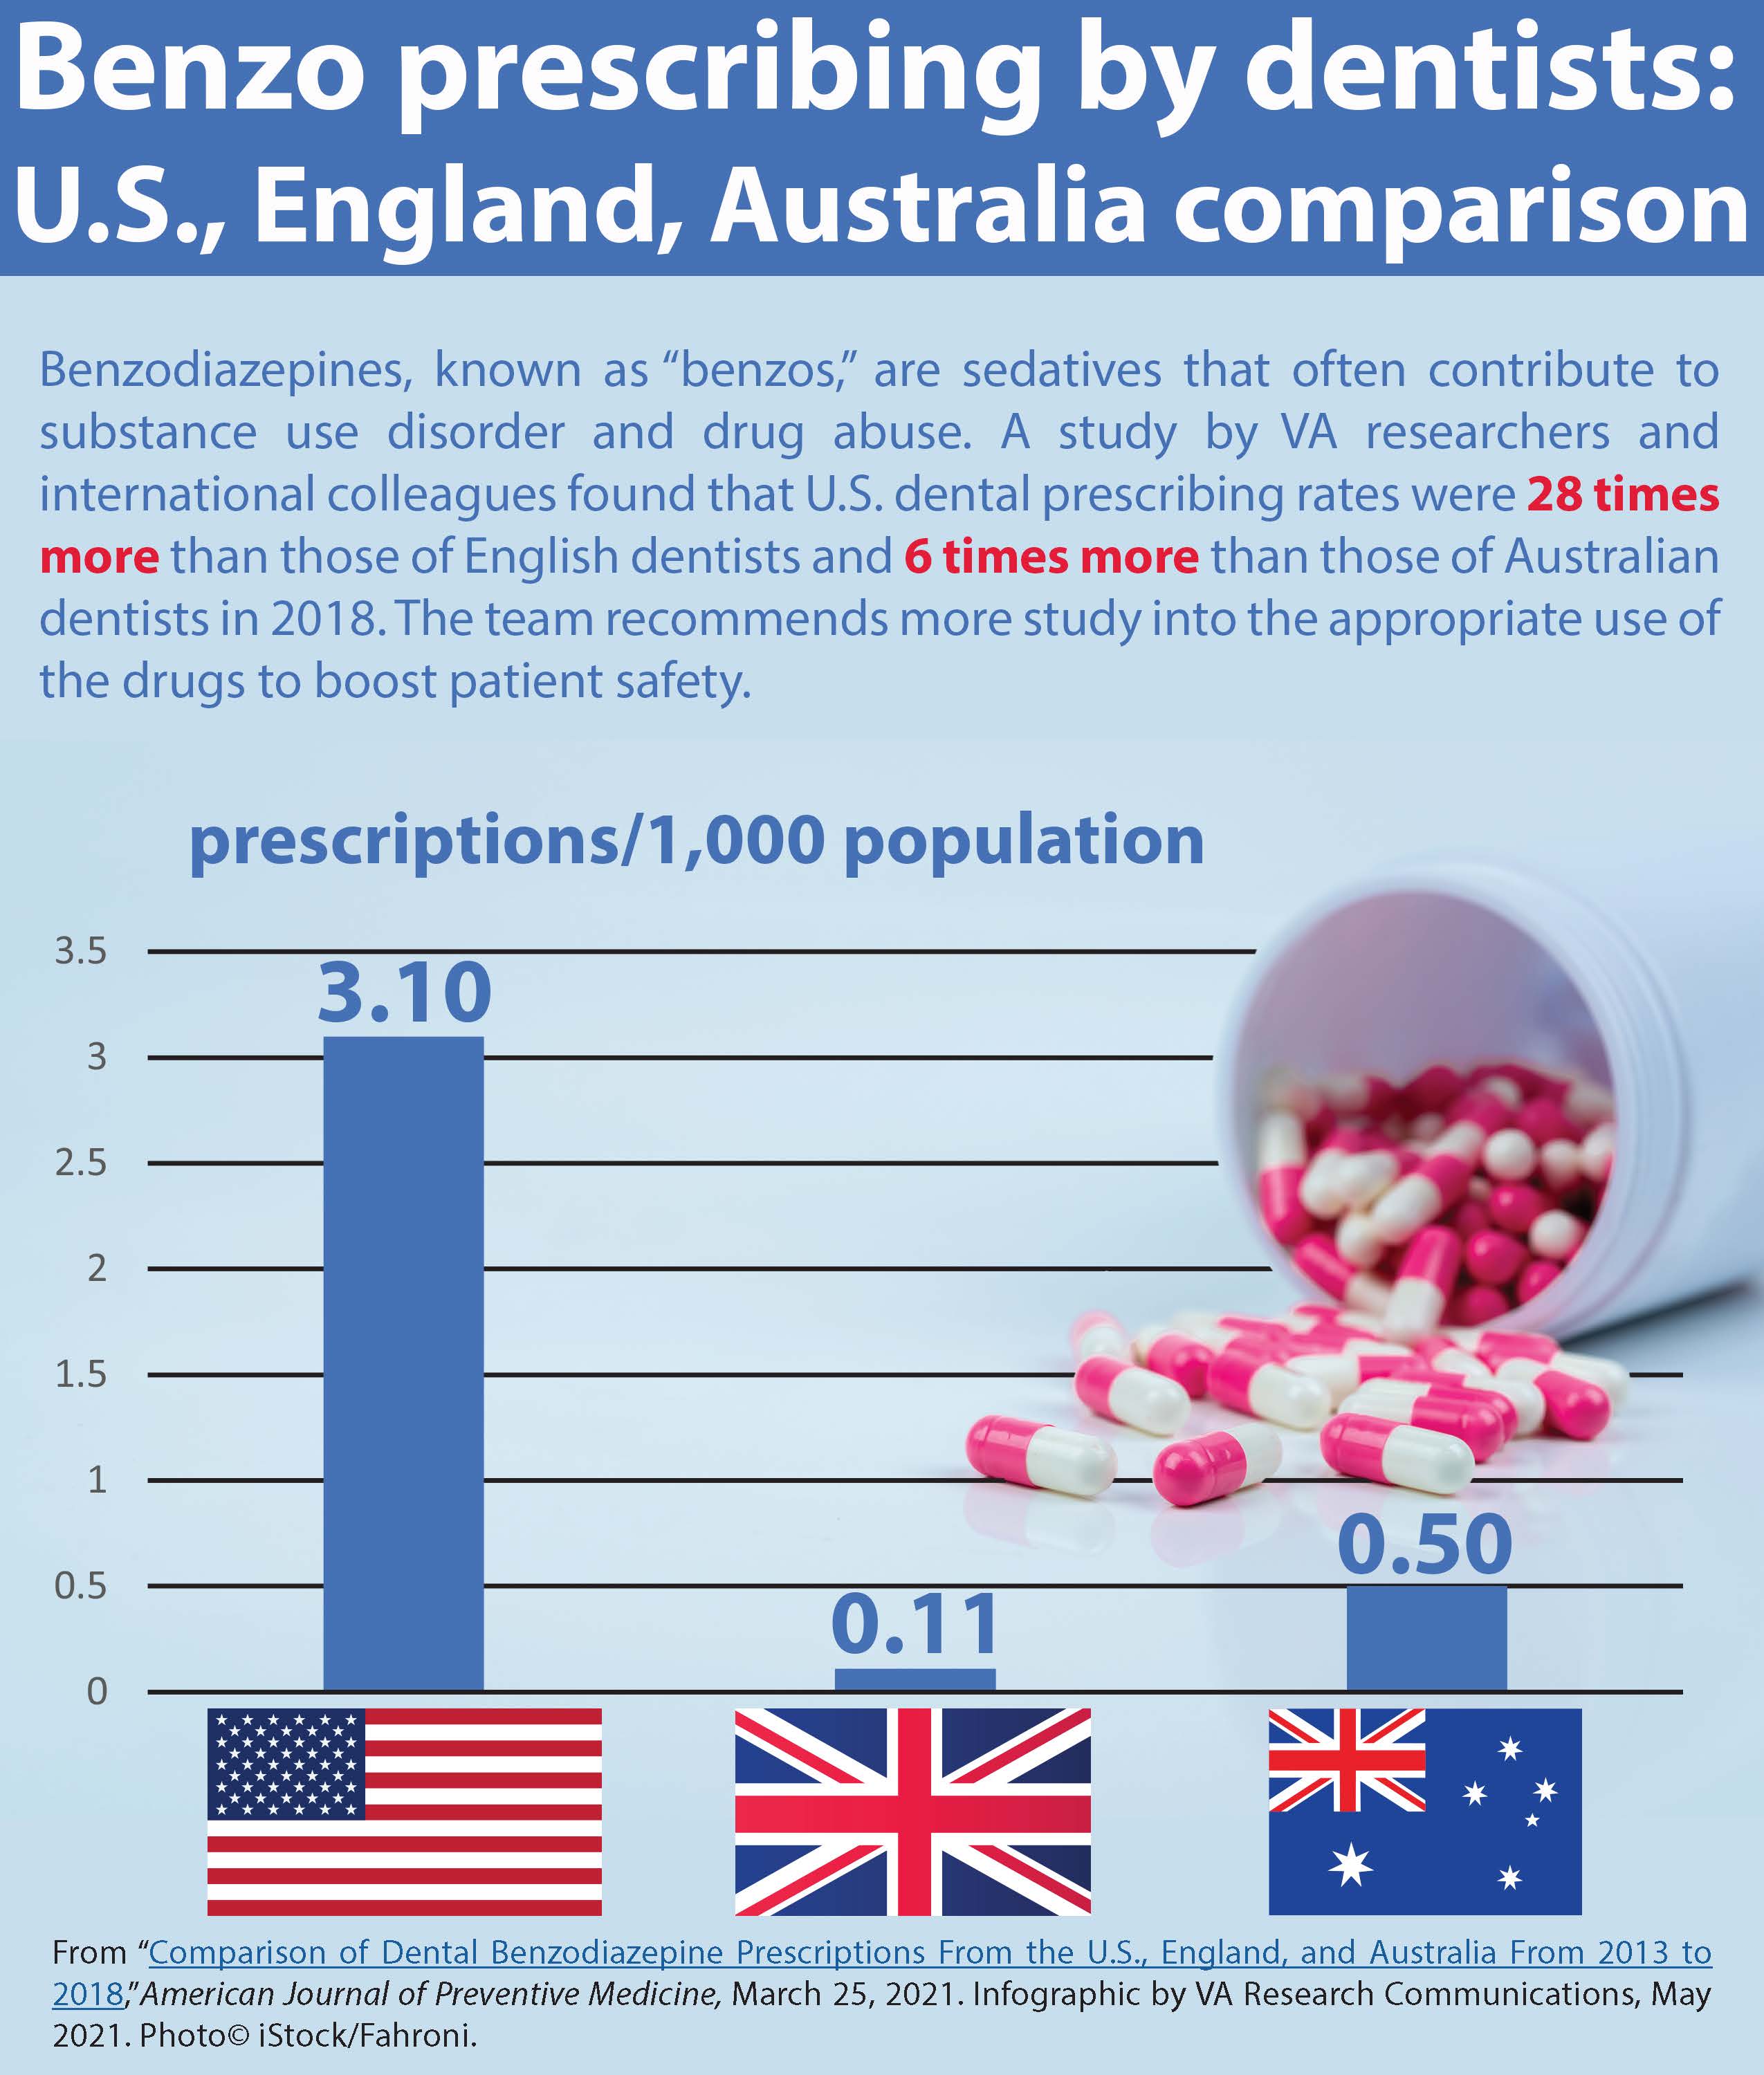 Benzo prescribing by dentists: U.S., England, Australia, comparison